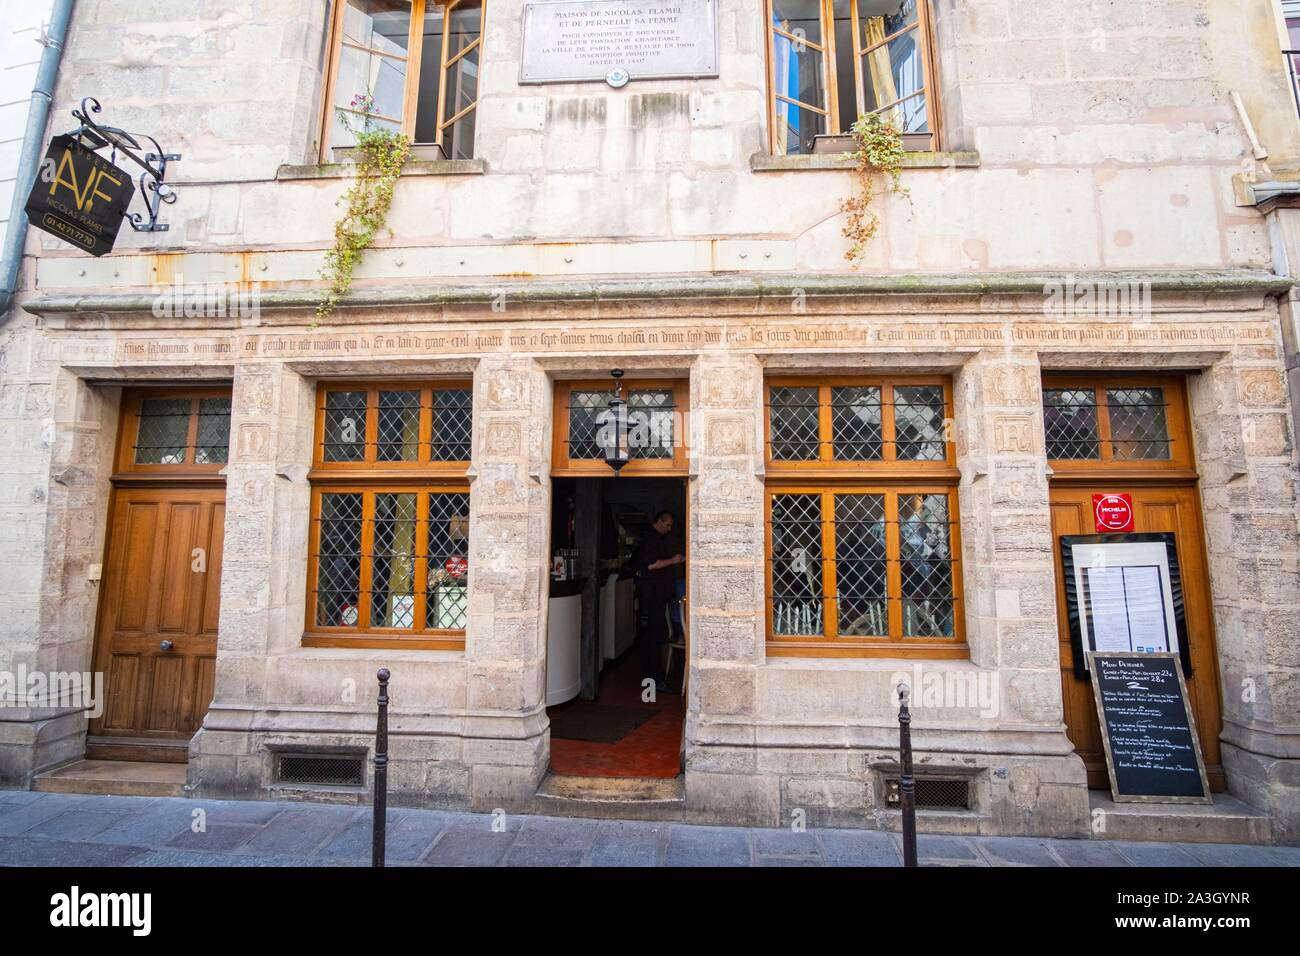 France, Paris, la maison de Nicolas Flamel, l'Auberge Nicolas Flamel restaurant Banque D'Images